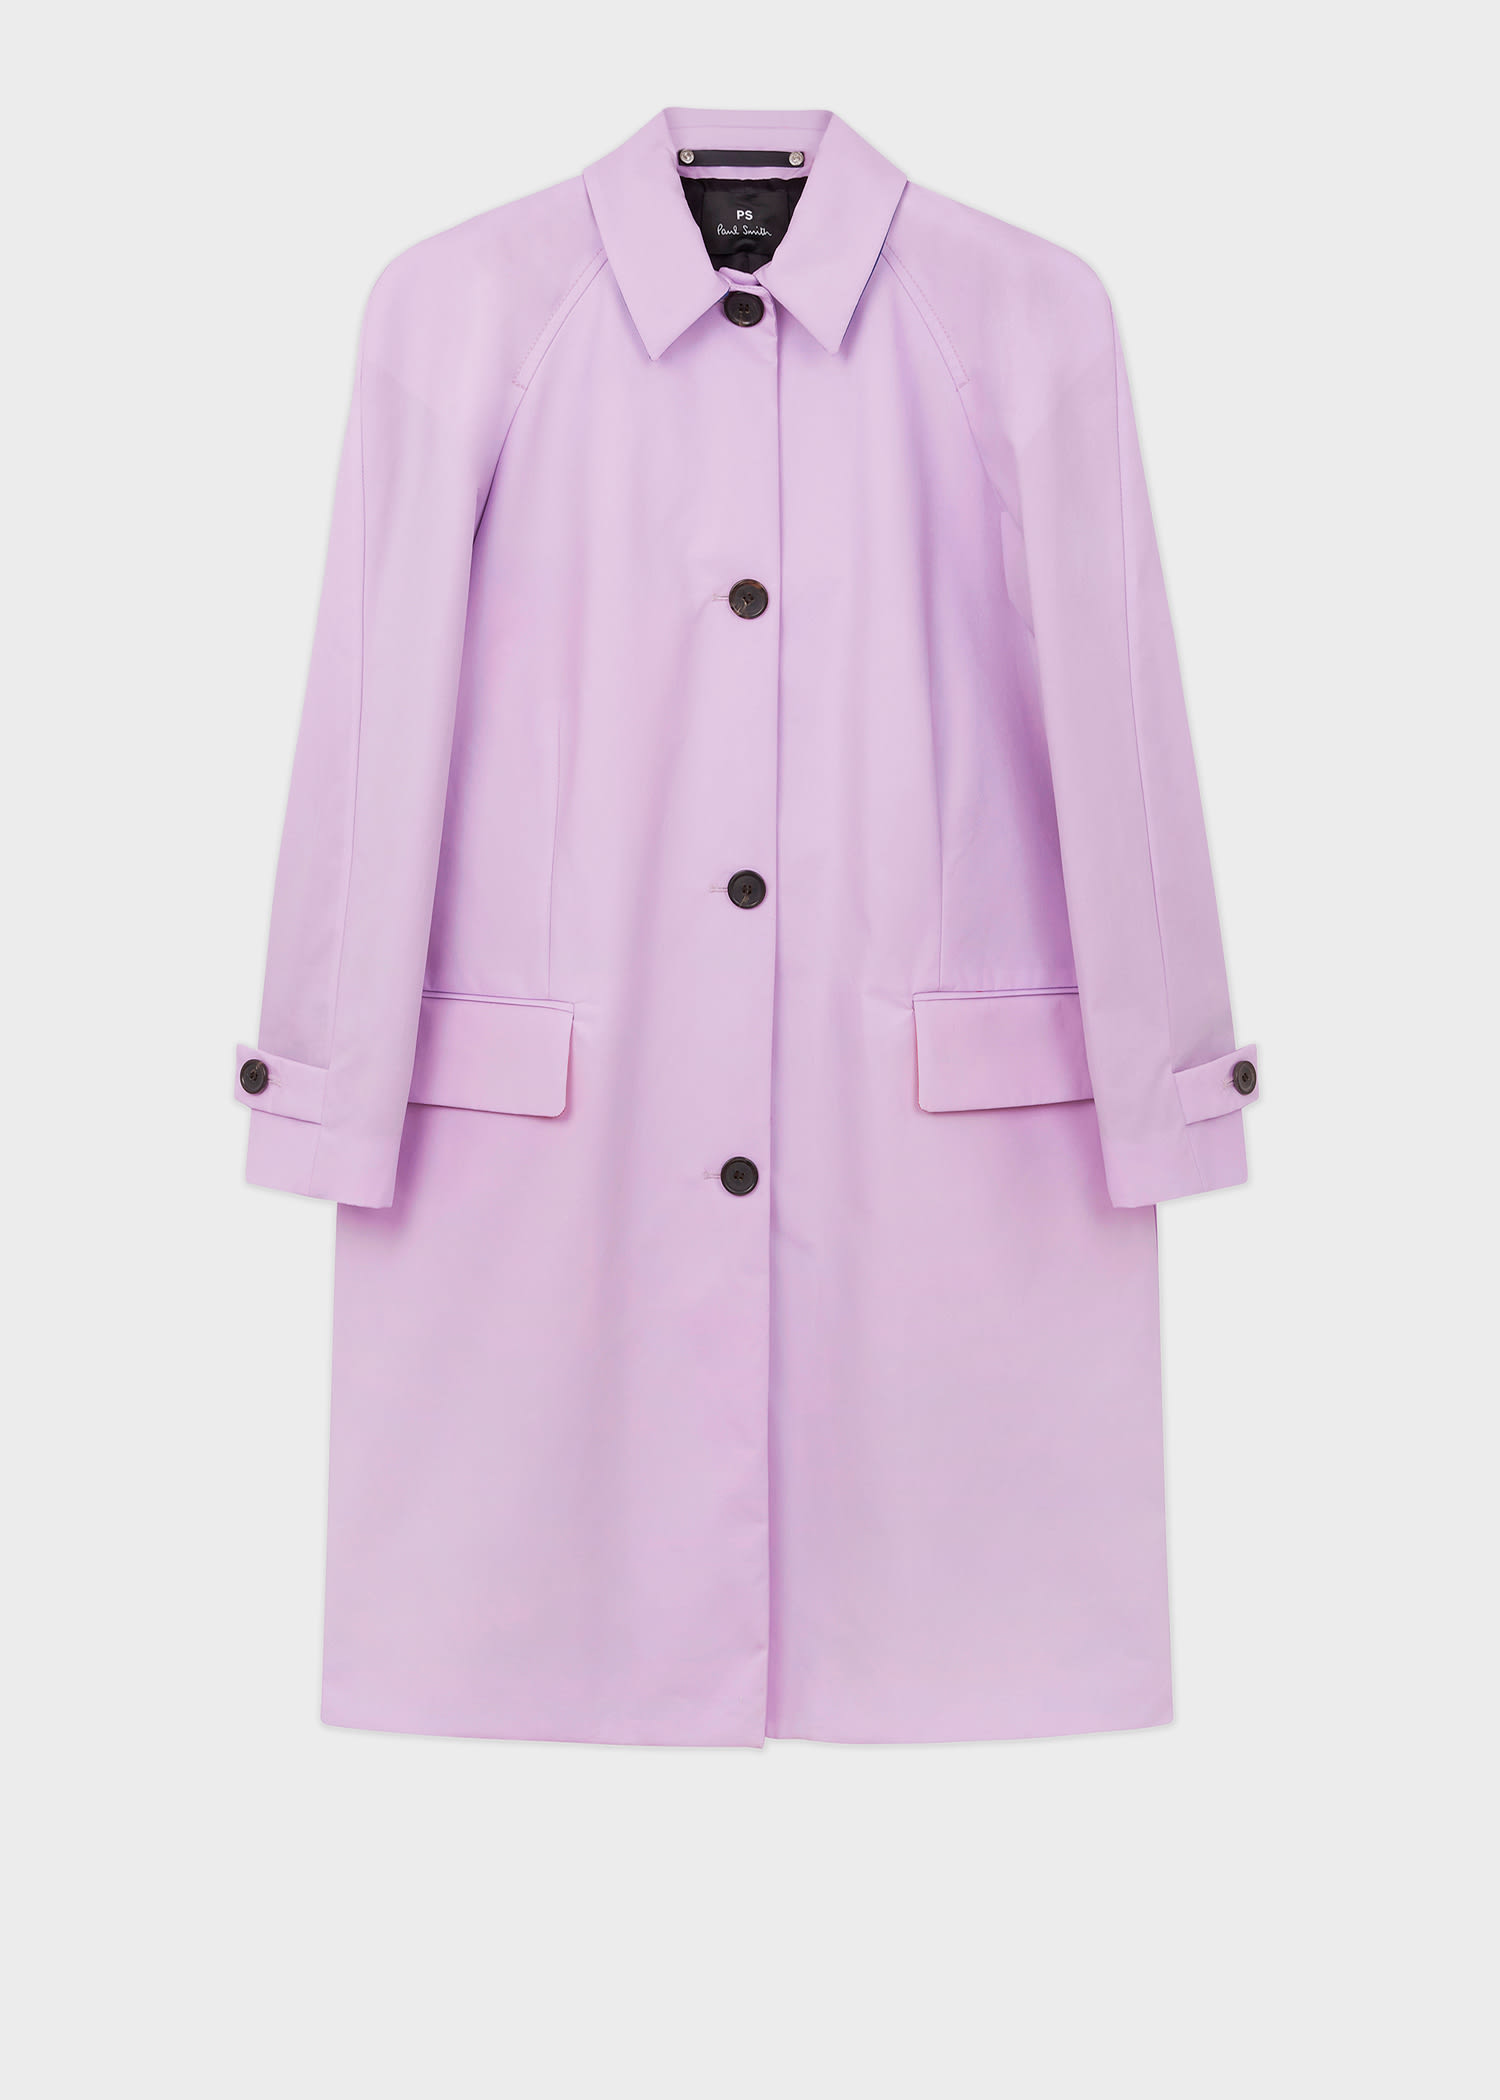 Women's Designer Coats & Jackets | Macs & Epsom Coats - Paul Smith